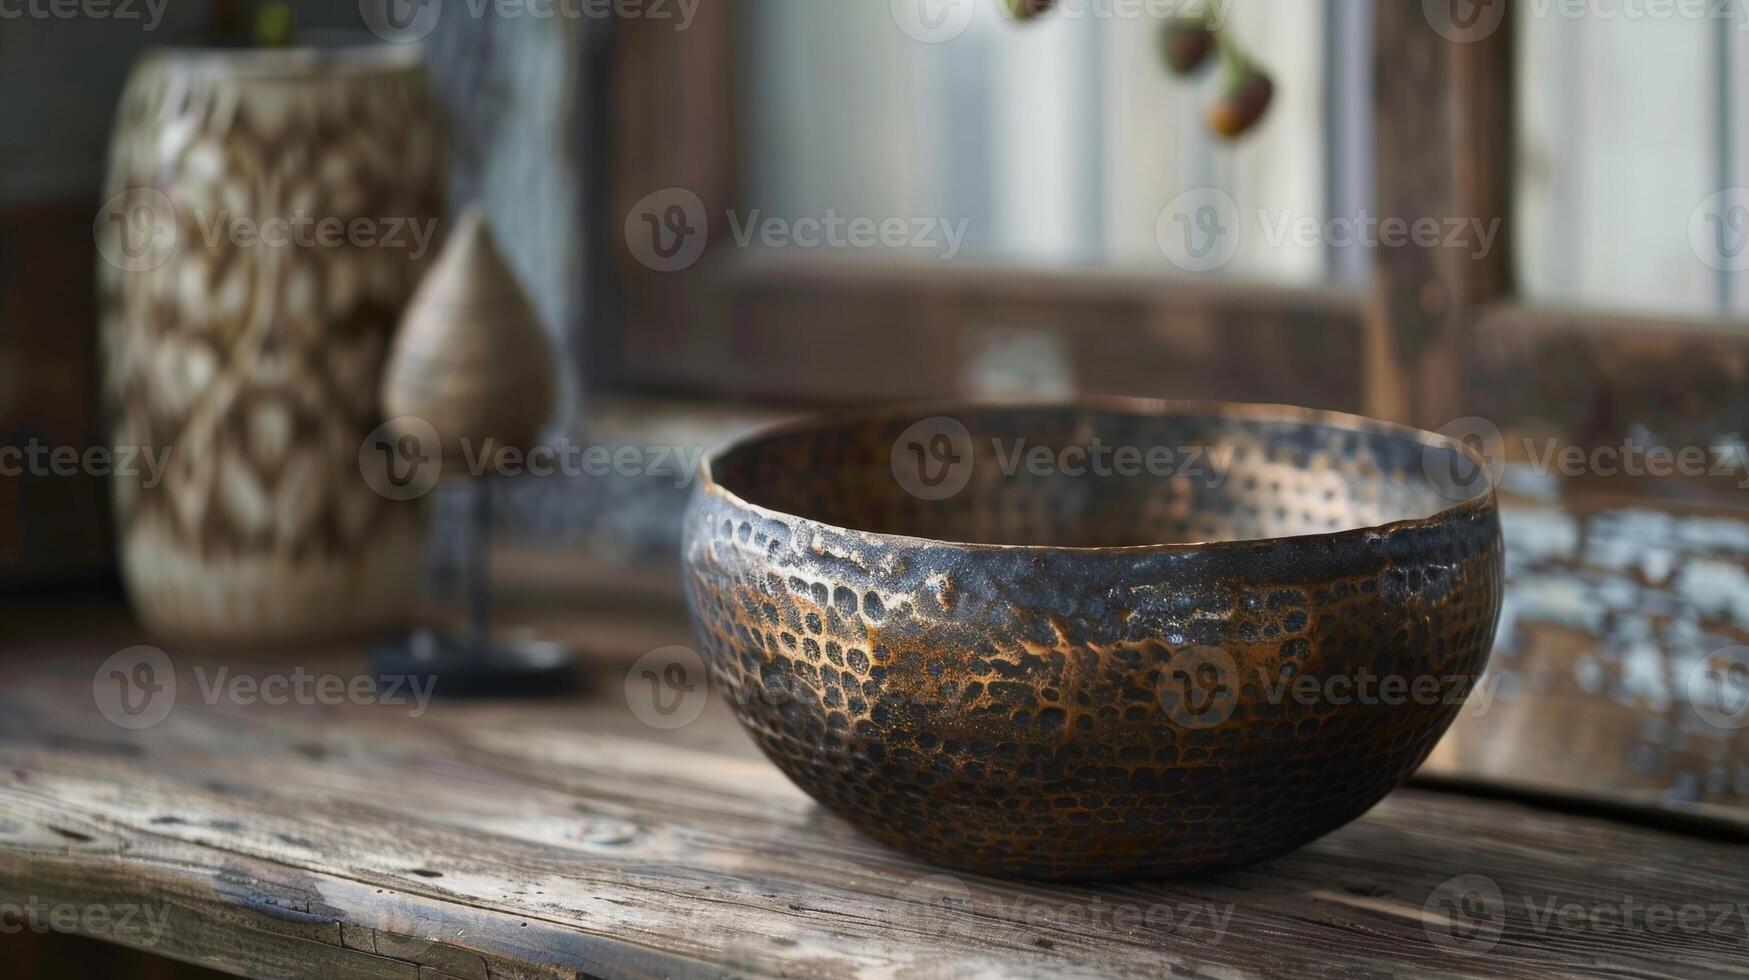 een hoekig visie van een keramisch pot met een gehamerd metaal af hebben brengen een element van rustiek charme naar de deel. foto